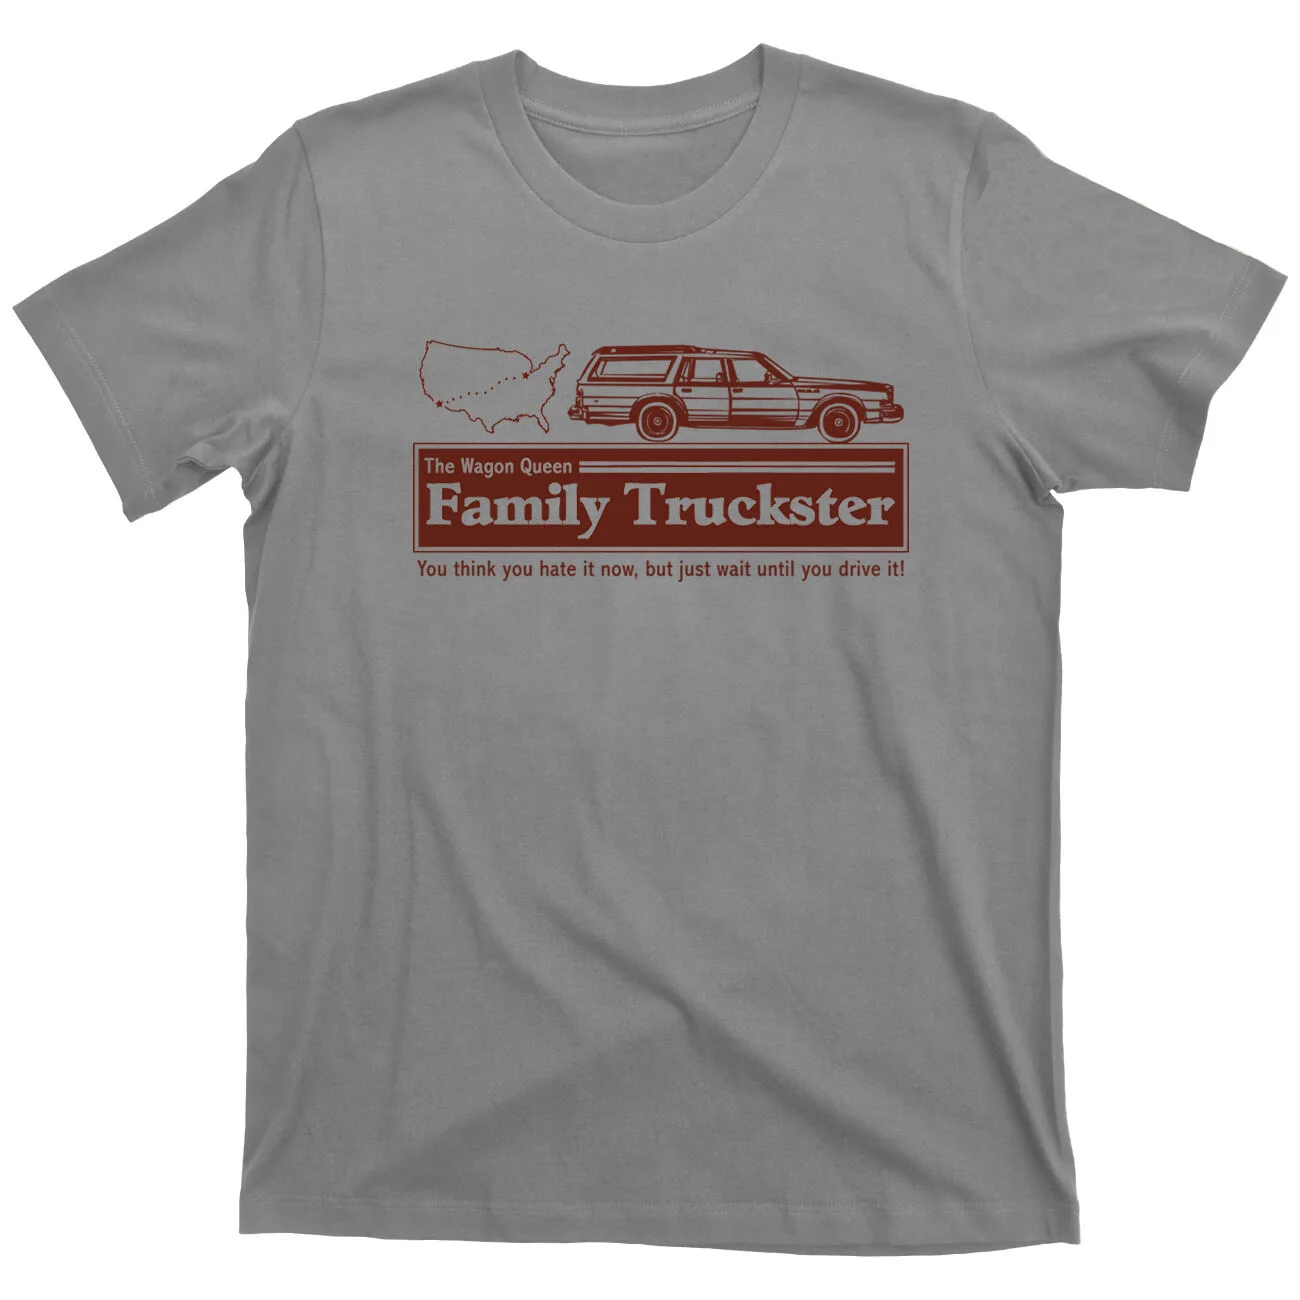 National Lampoons каникулы Wagon queen family Truckster Save Ferris Футболка мужская хип хоп Забавные футболки дешевые оптом